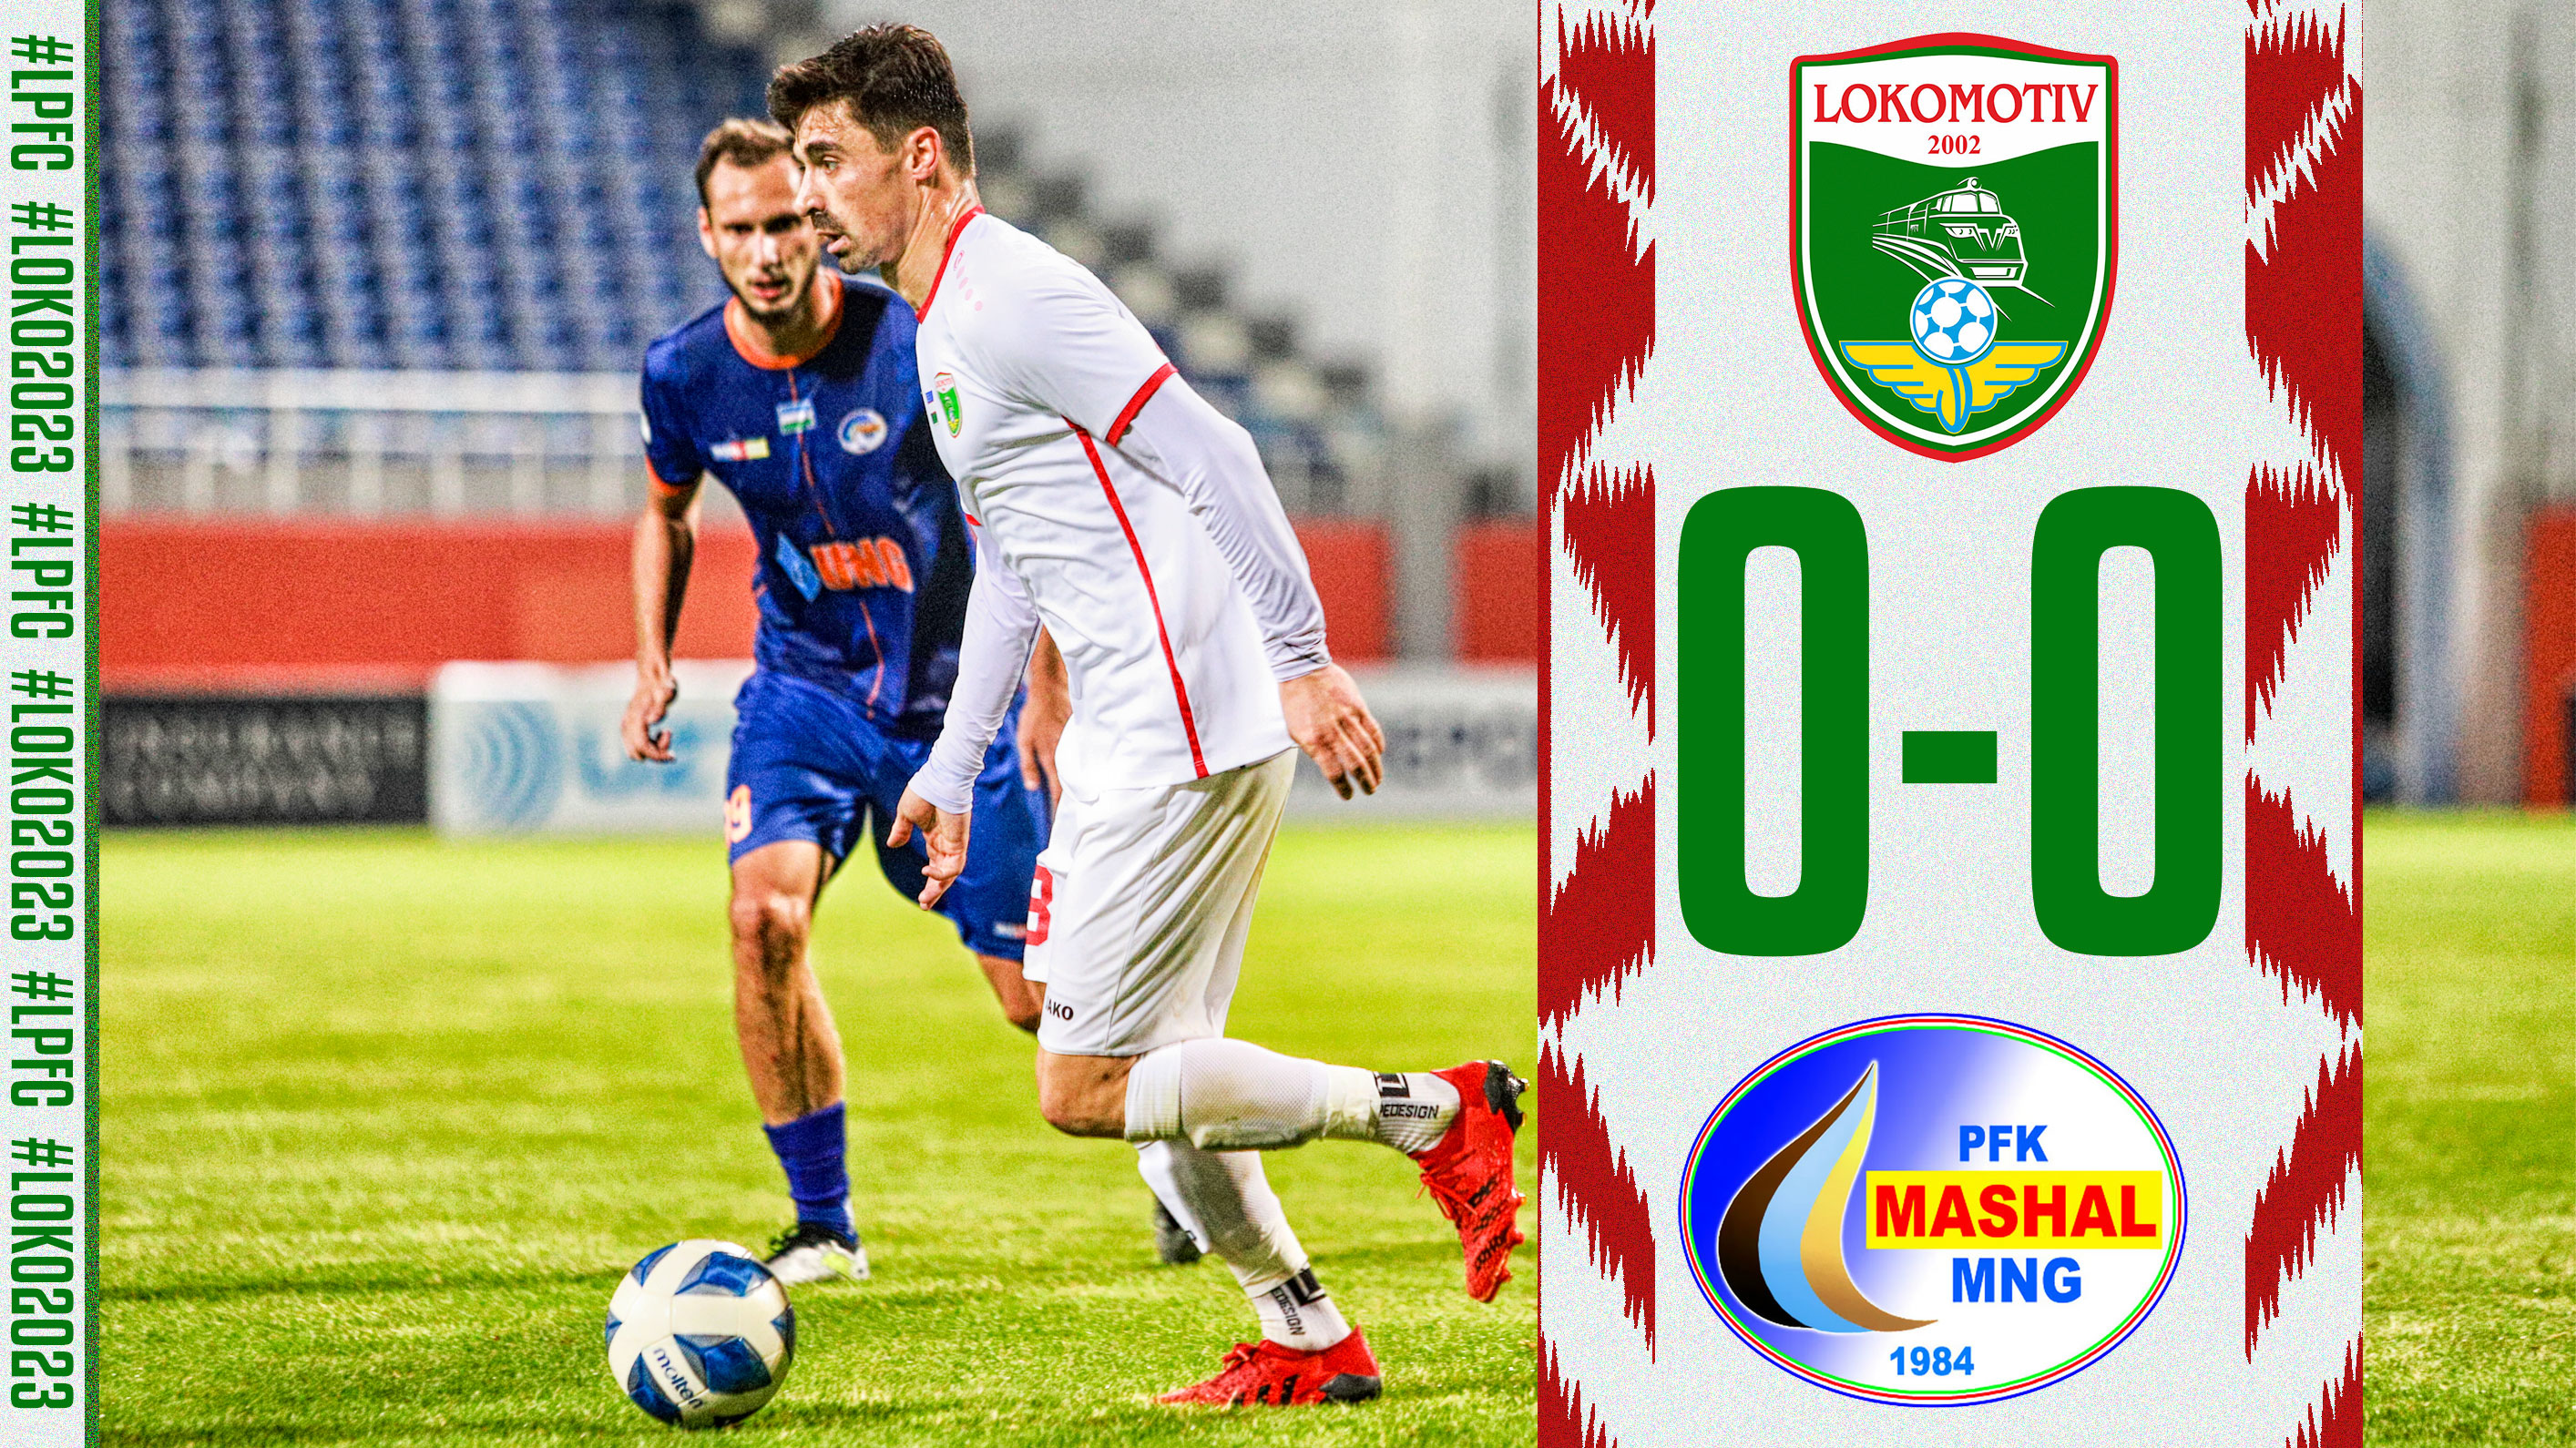 Pro-Liga. "Lokomotiv" - "Mash`al" 0:0